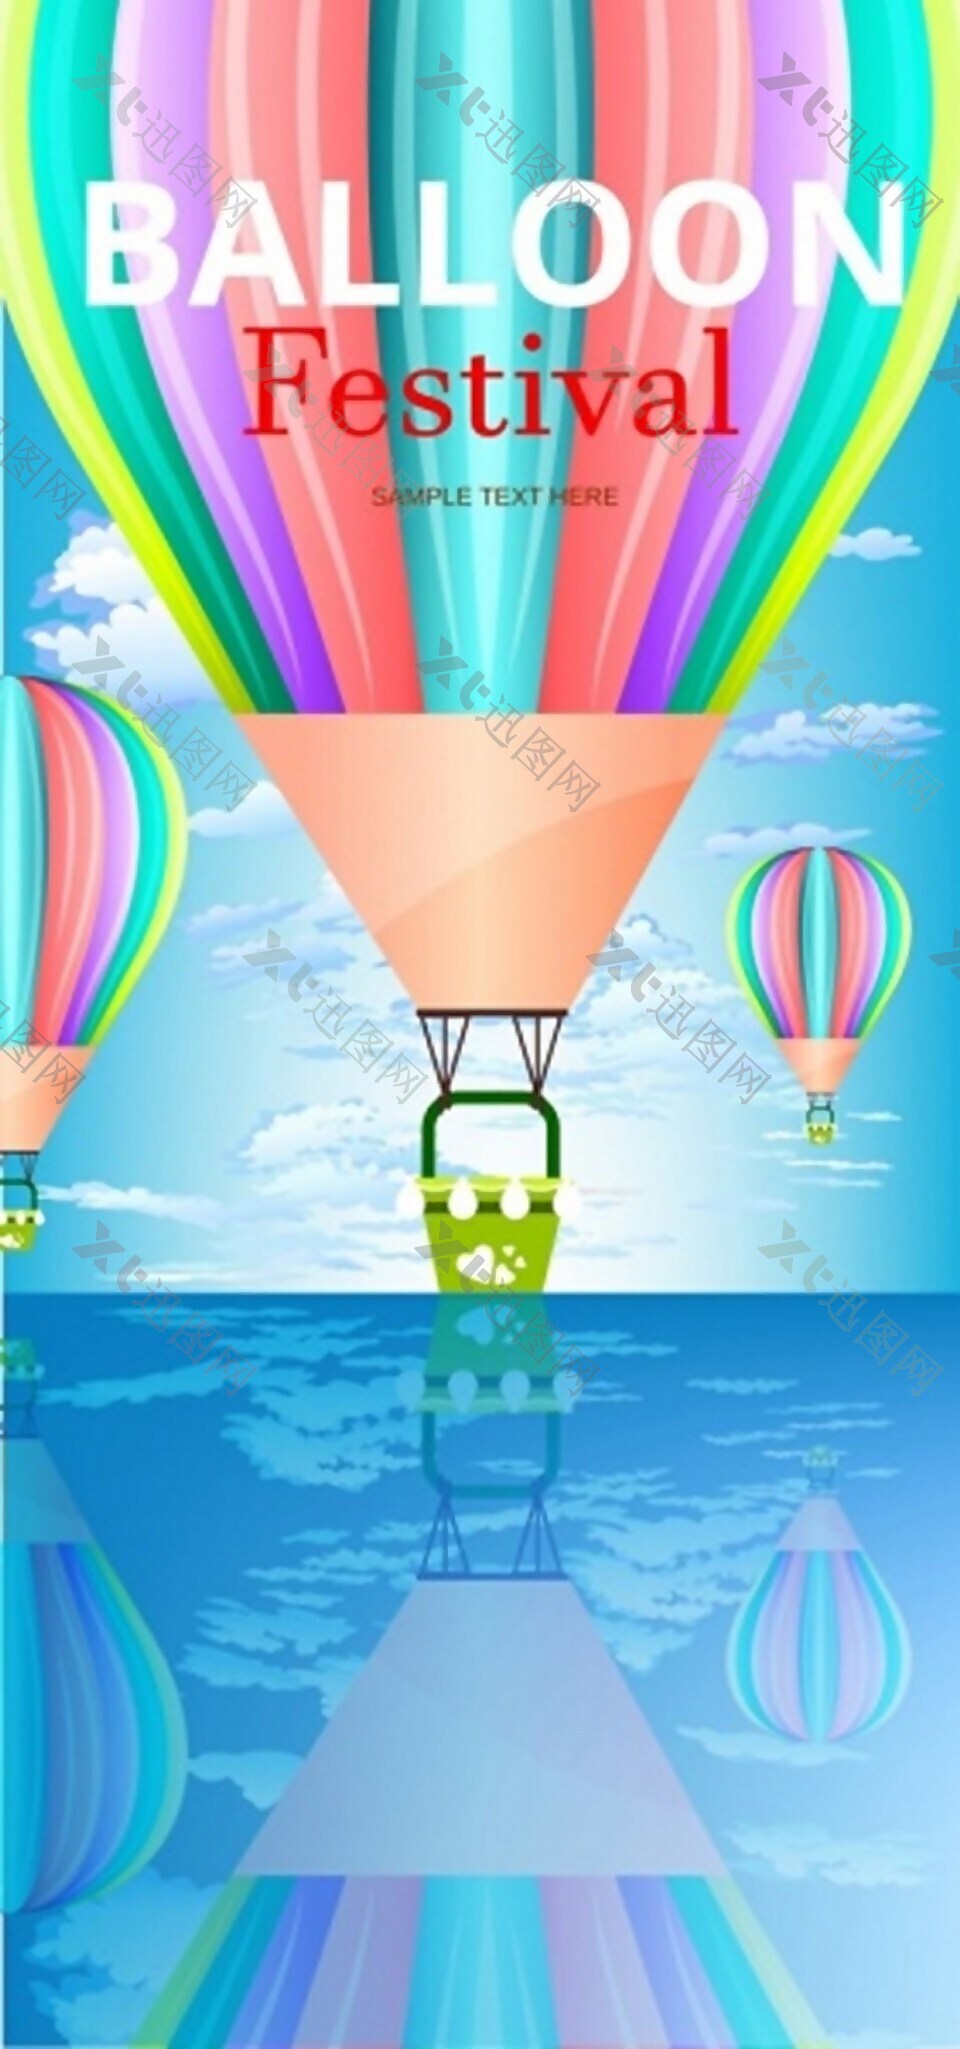 彩色热气球矢量素材